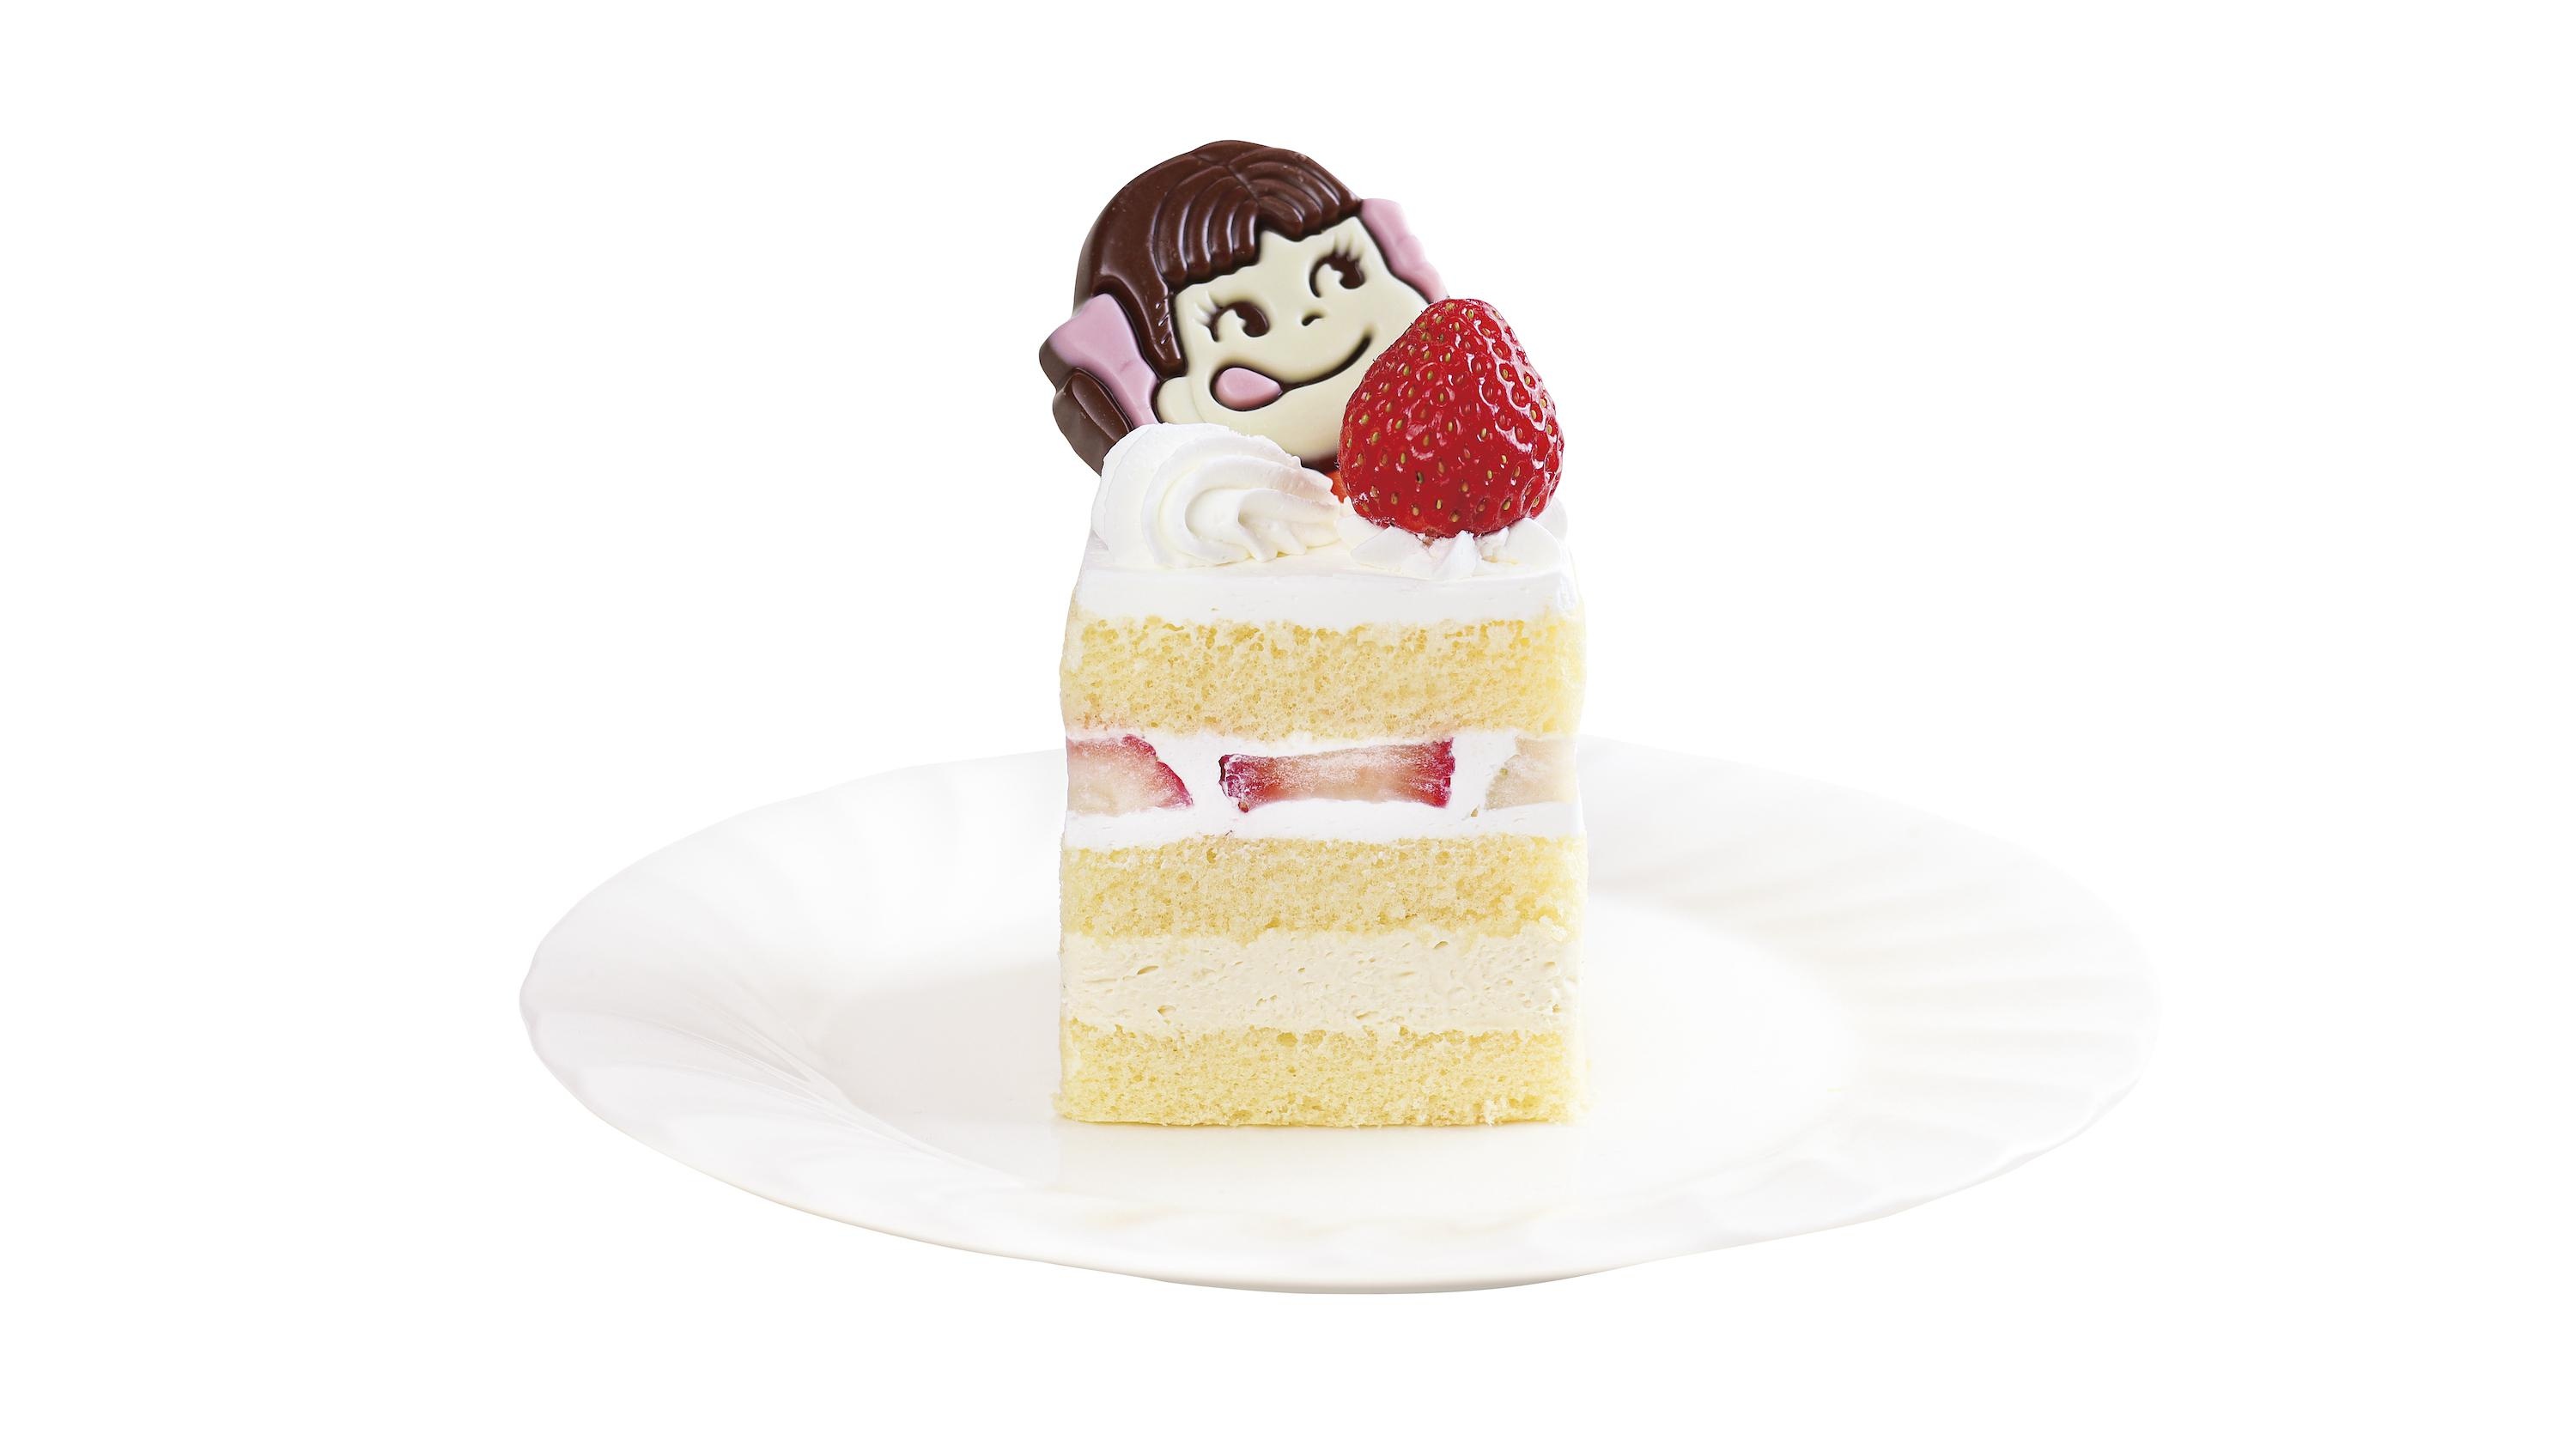 「ショートケーキ12の物語」で9月22日から9月30日(金)まで限定販売される「ペコちゃんからの贈り物」。ペコちゃんの顔は写真ものともう1種類ある